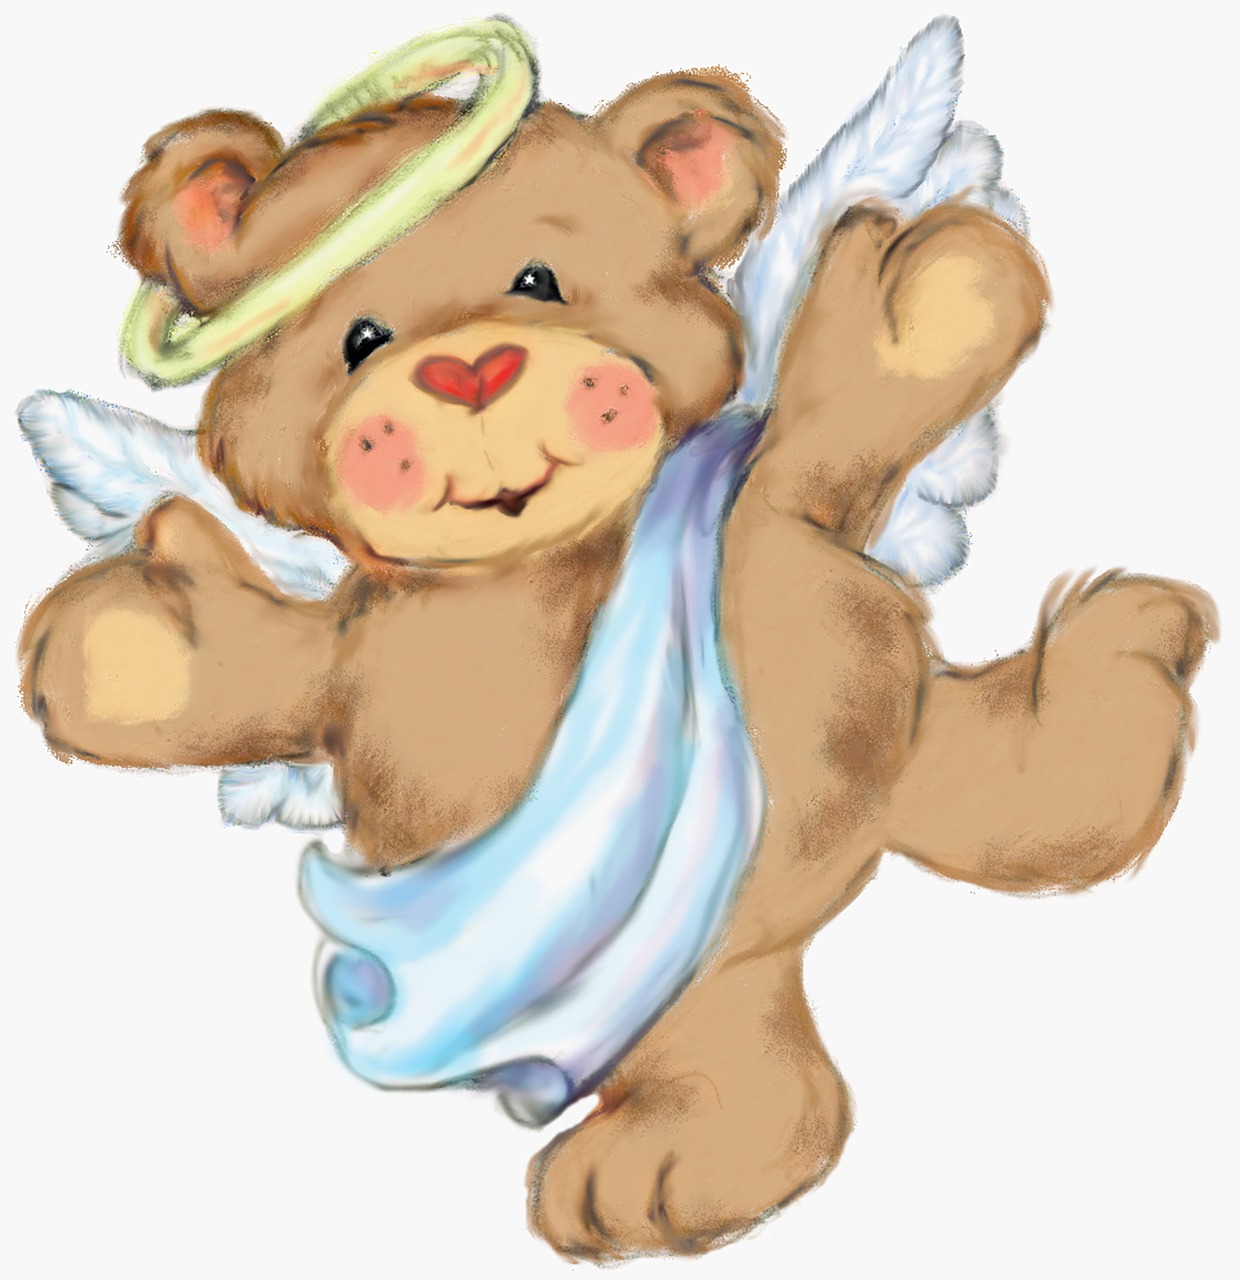 Angel,bear,teddy bear,cute,happy.